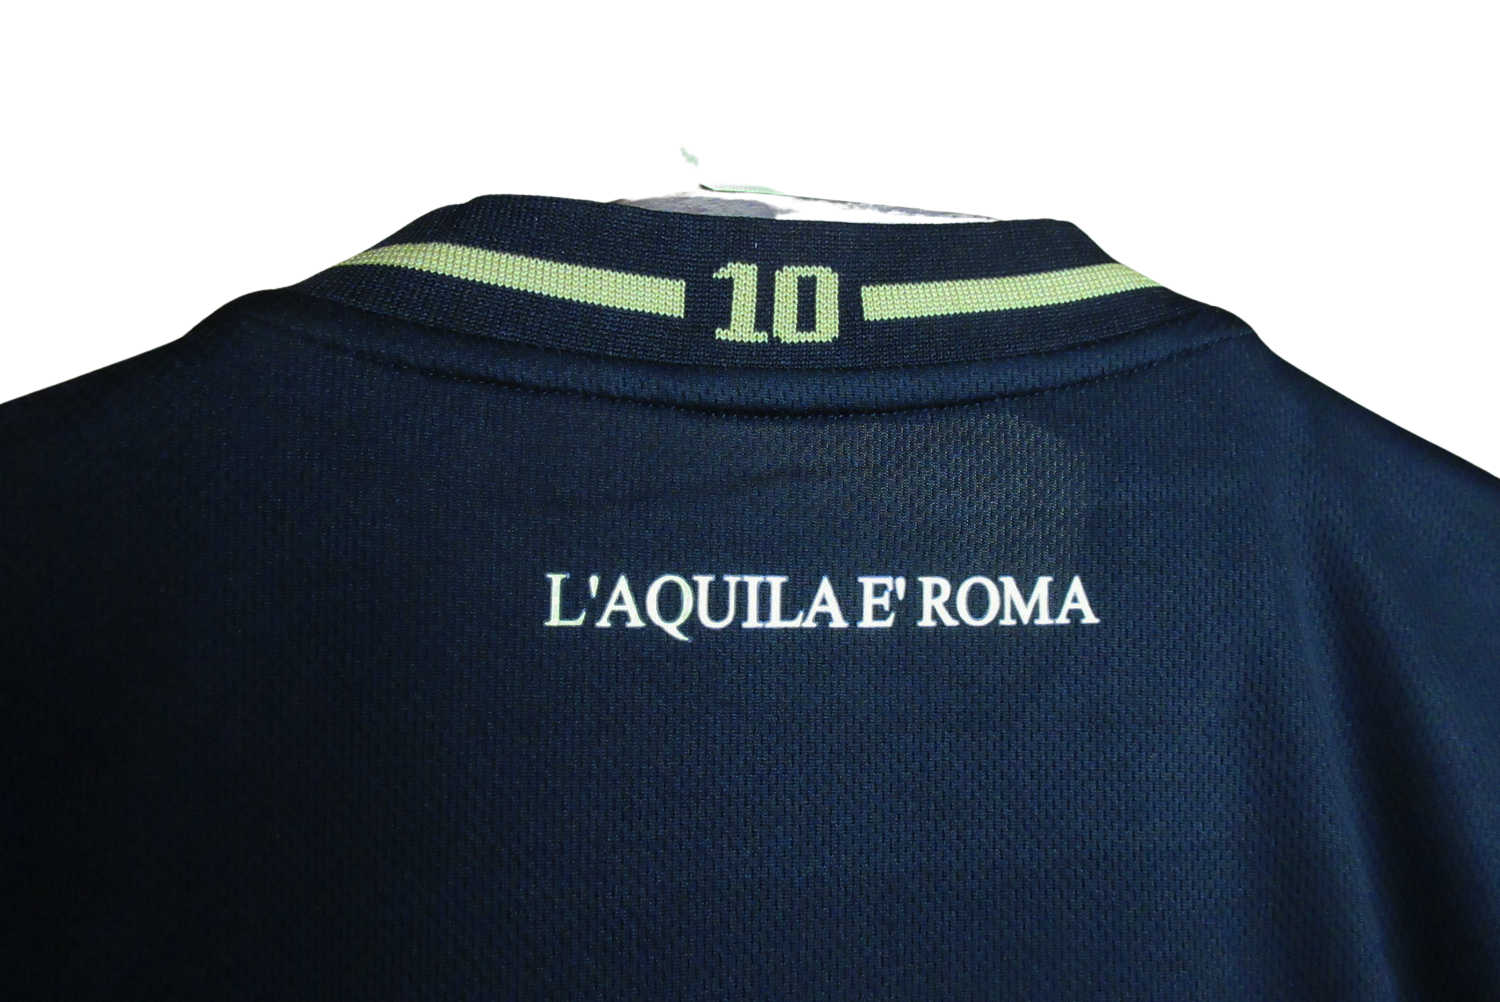 Lazio 2023 Coppa Italia 10th Anniversary - Fan version - Back